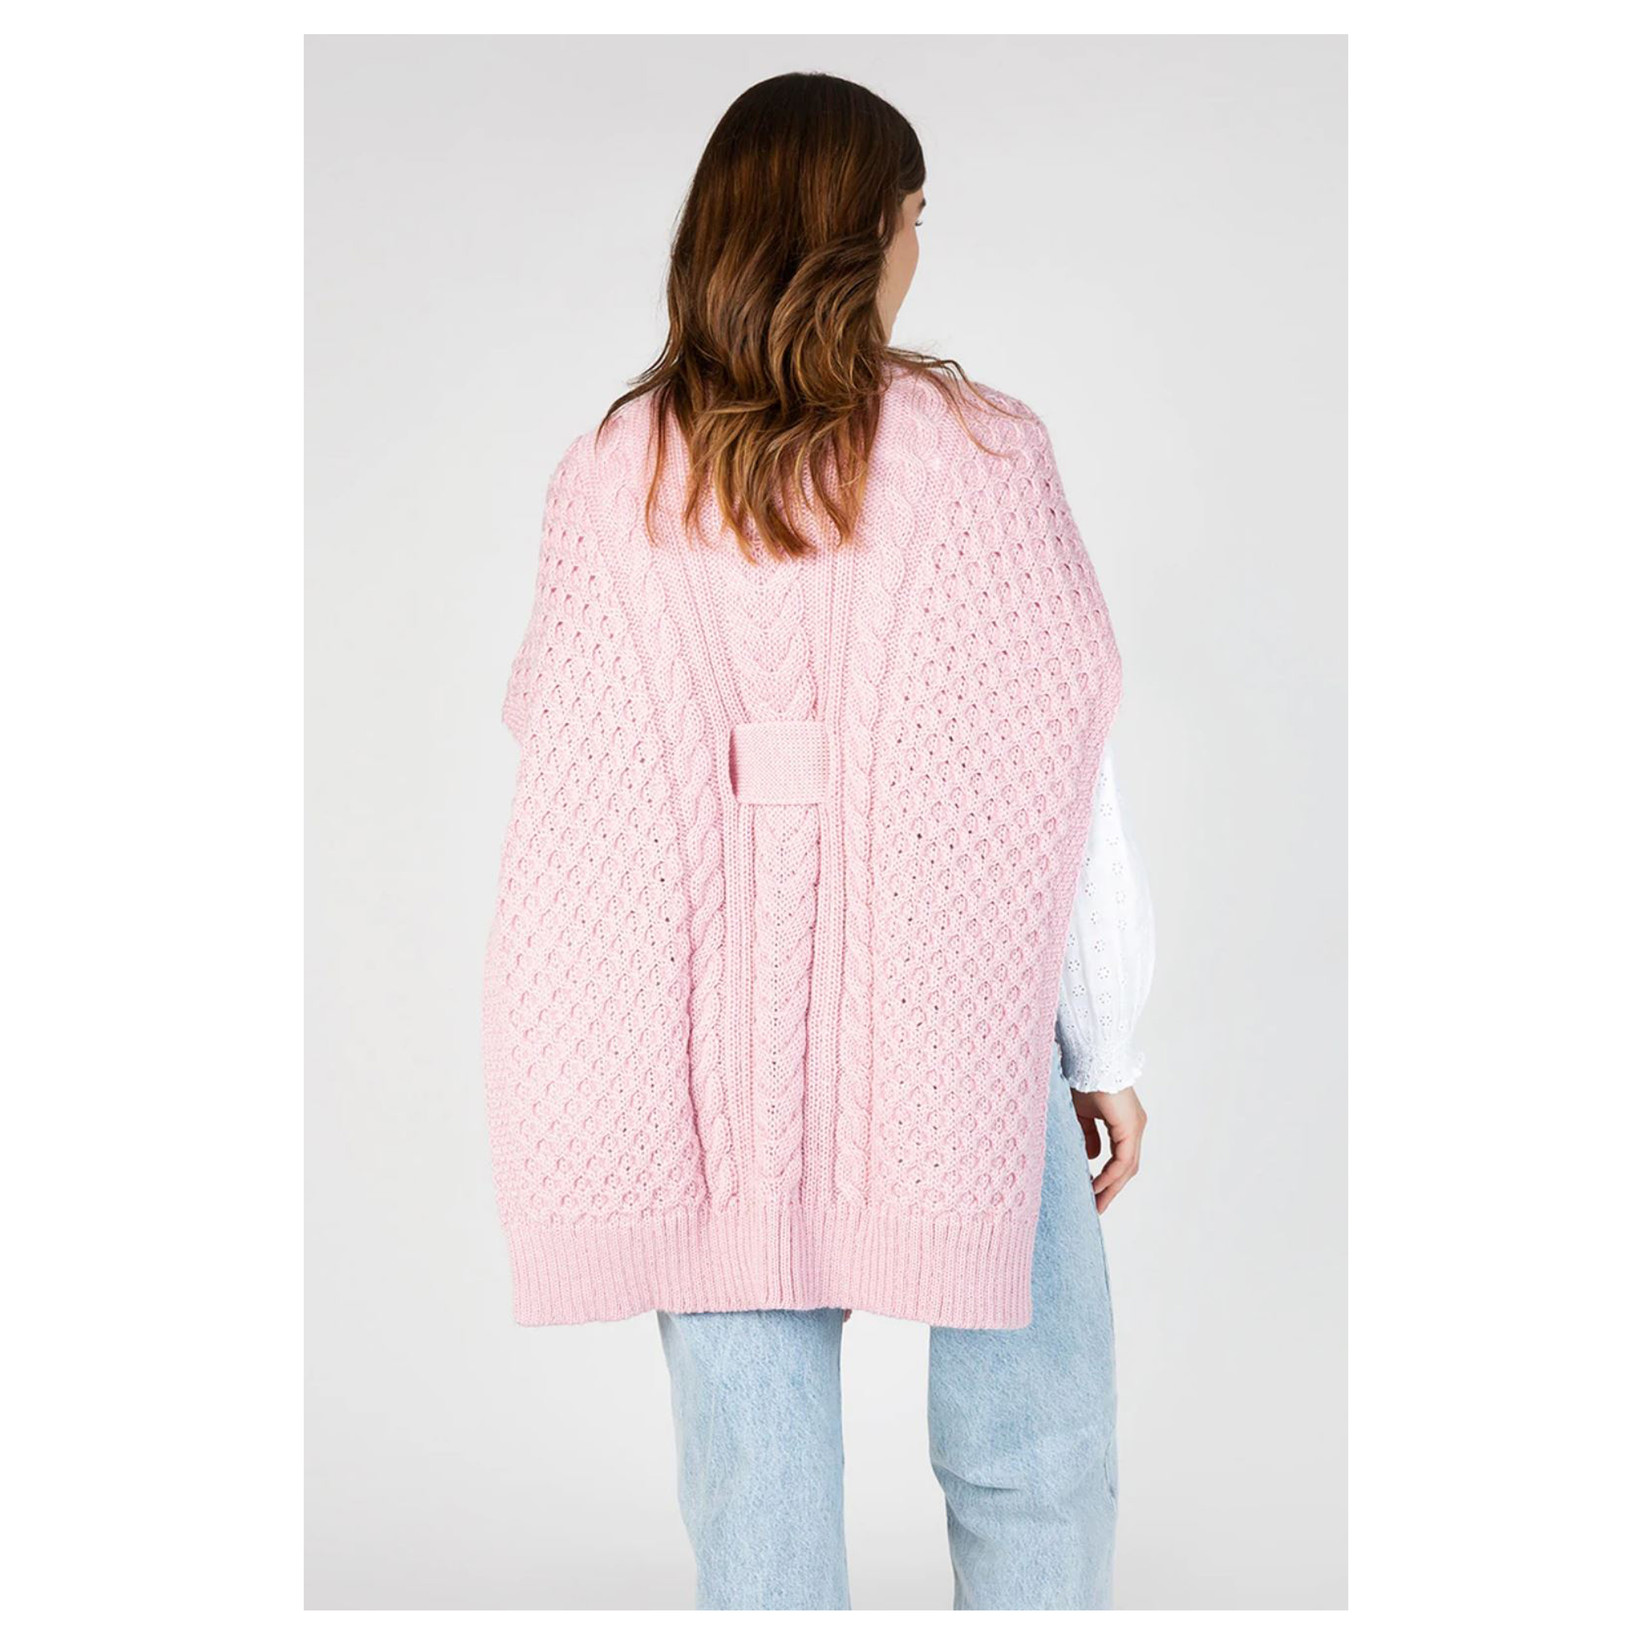 IrelandsEye Knitwear Aran Belted Cable Cape: Light Pink